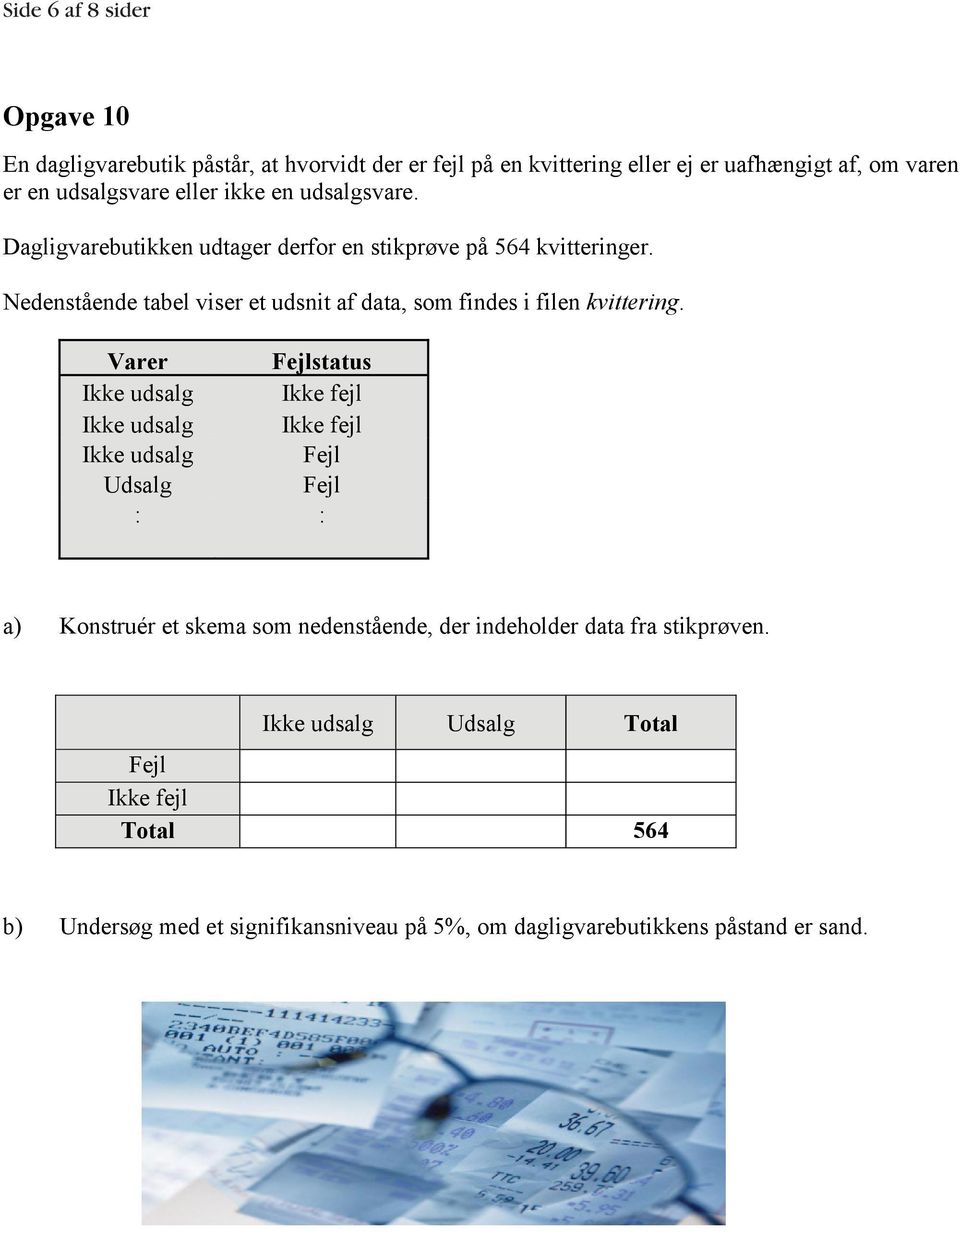 Nedenstående tabel viser et udsnit af data, som findes i filen kvittering.